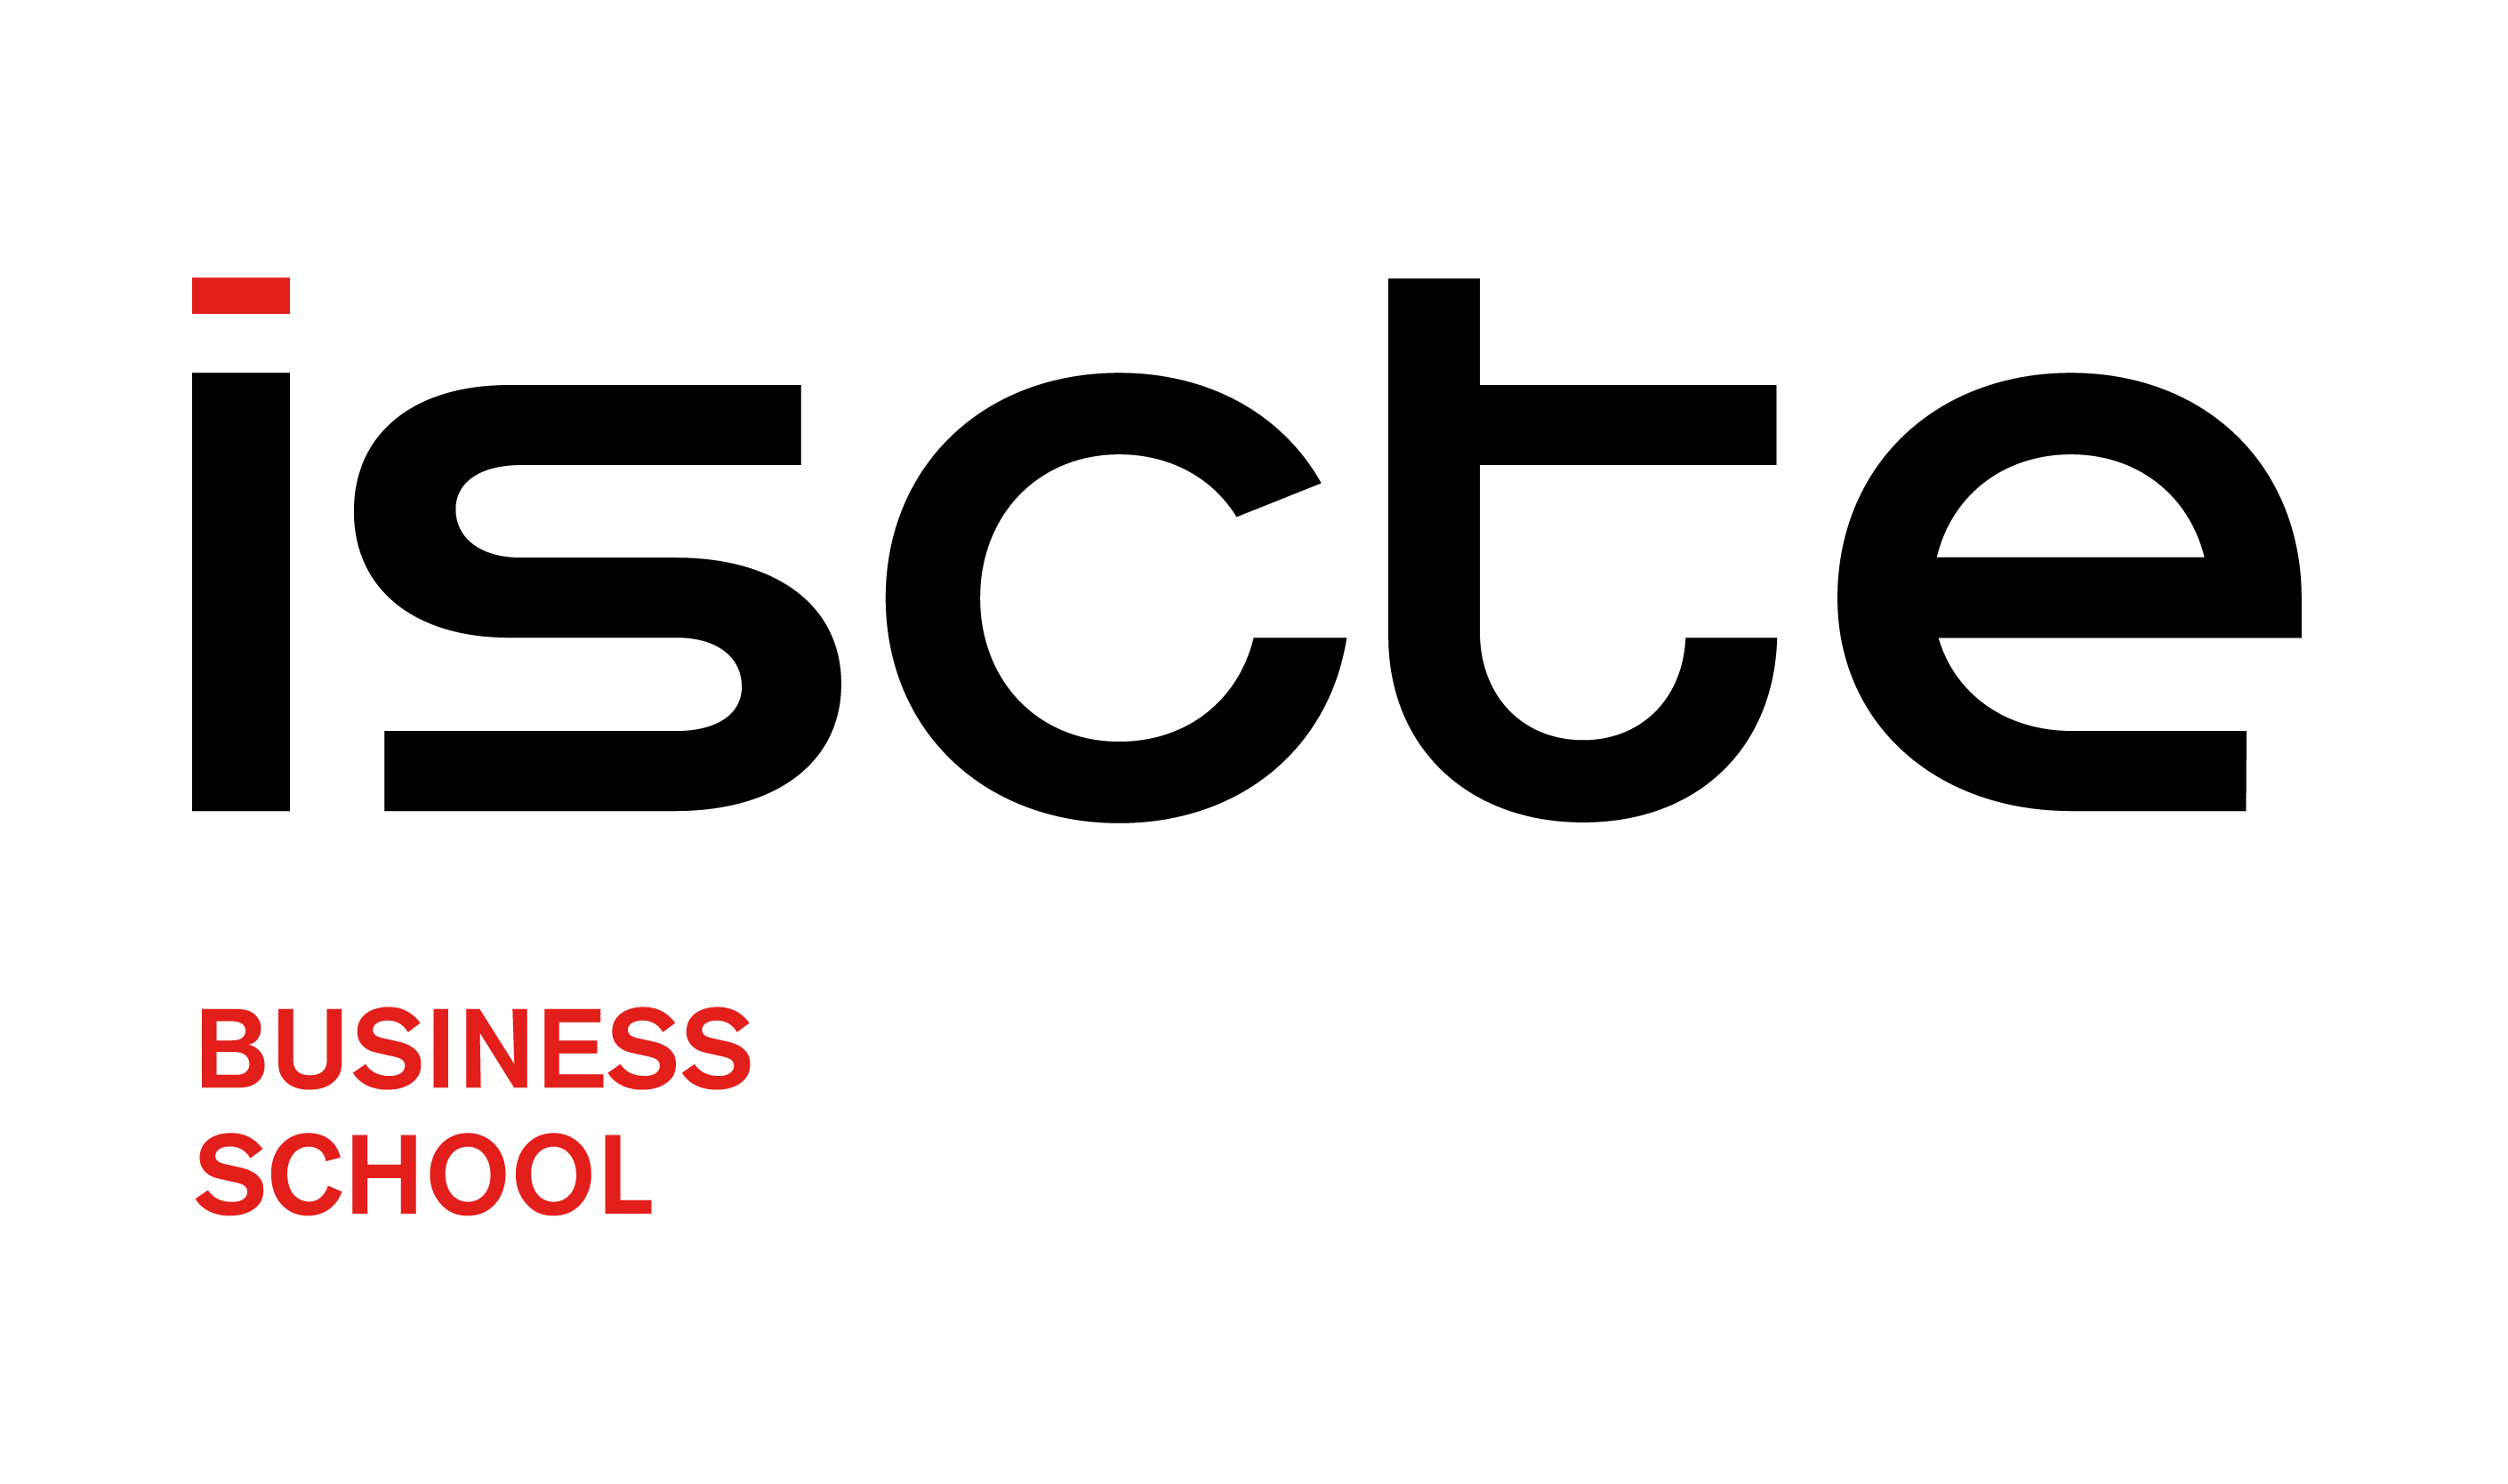 Logo Iscte Business School